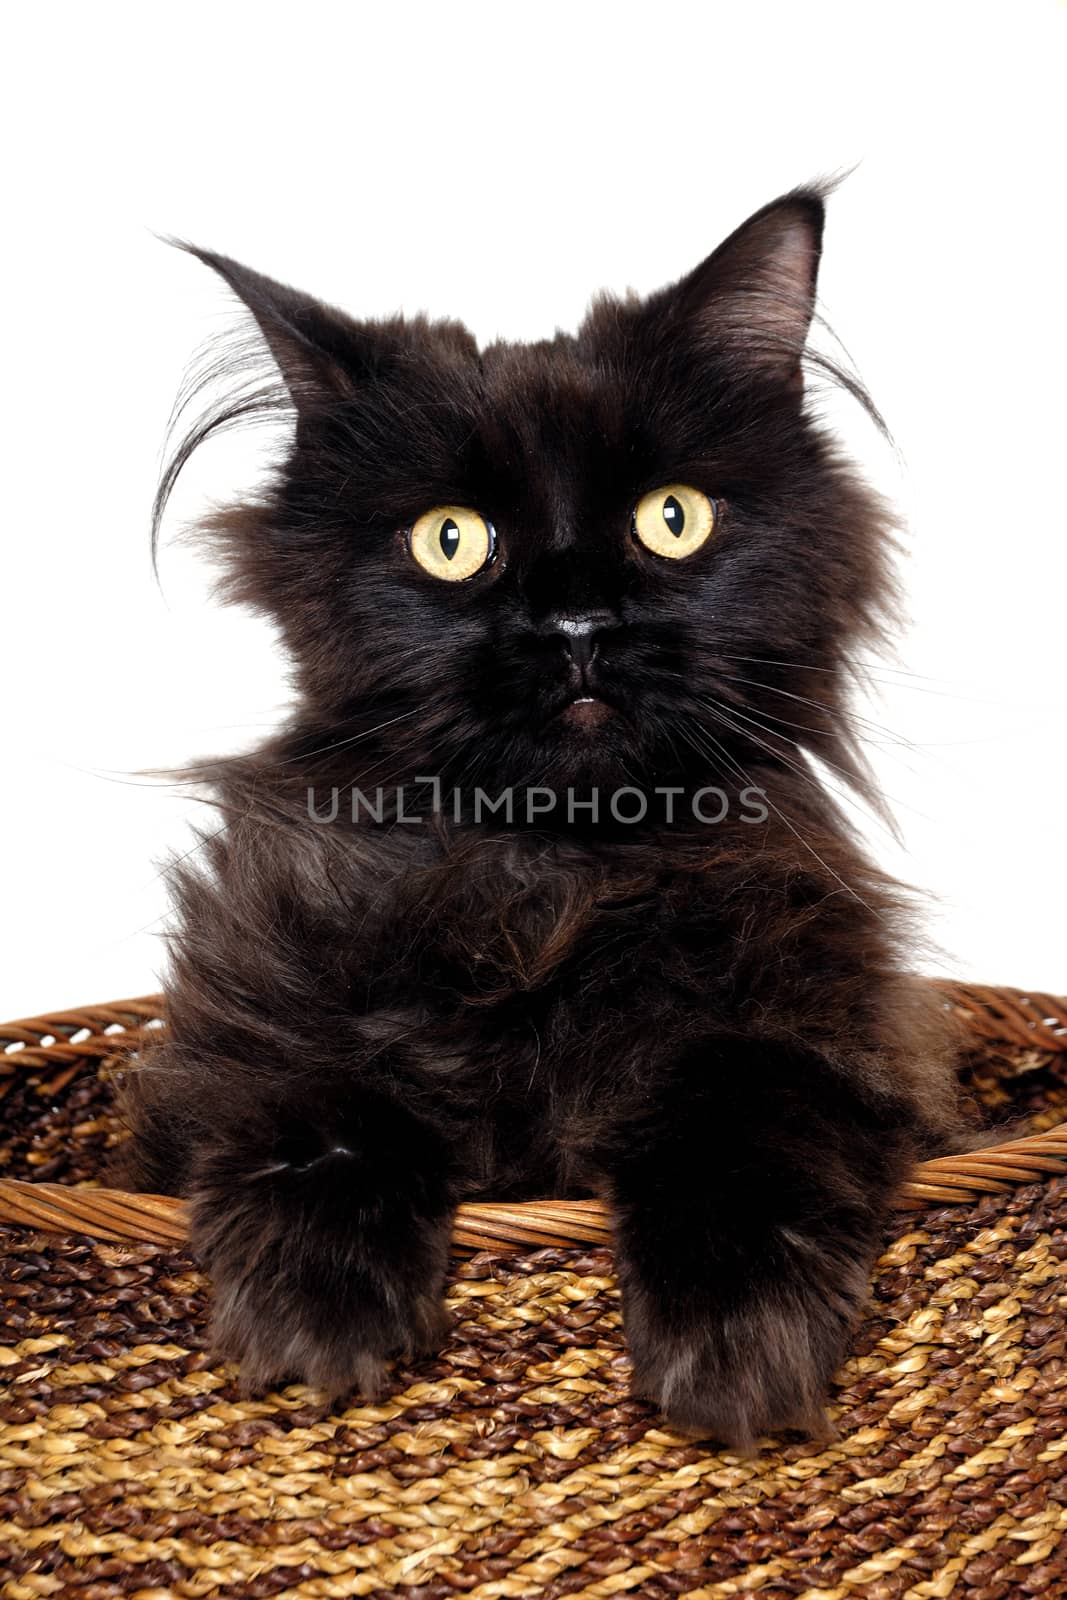 Black cat in a basket by cfoto